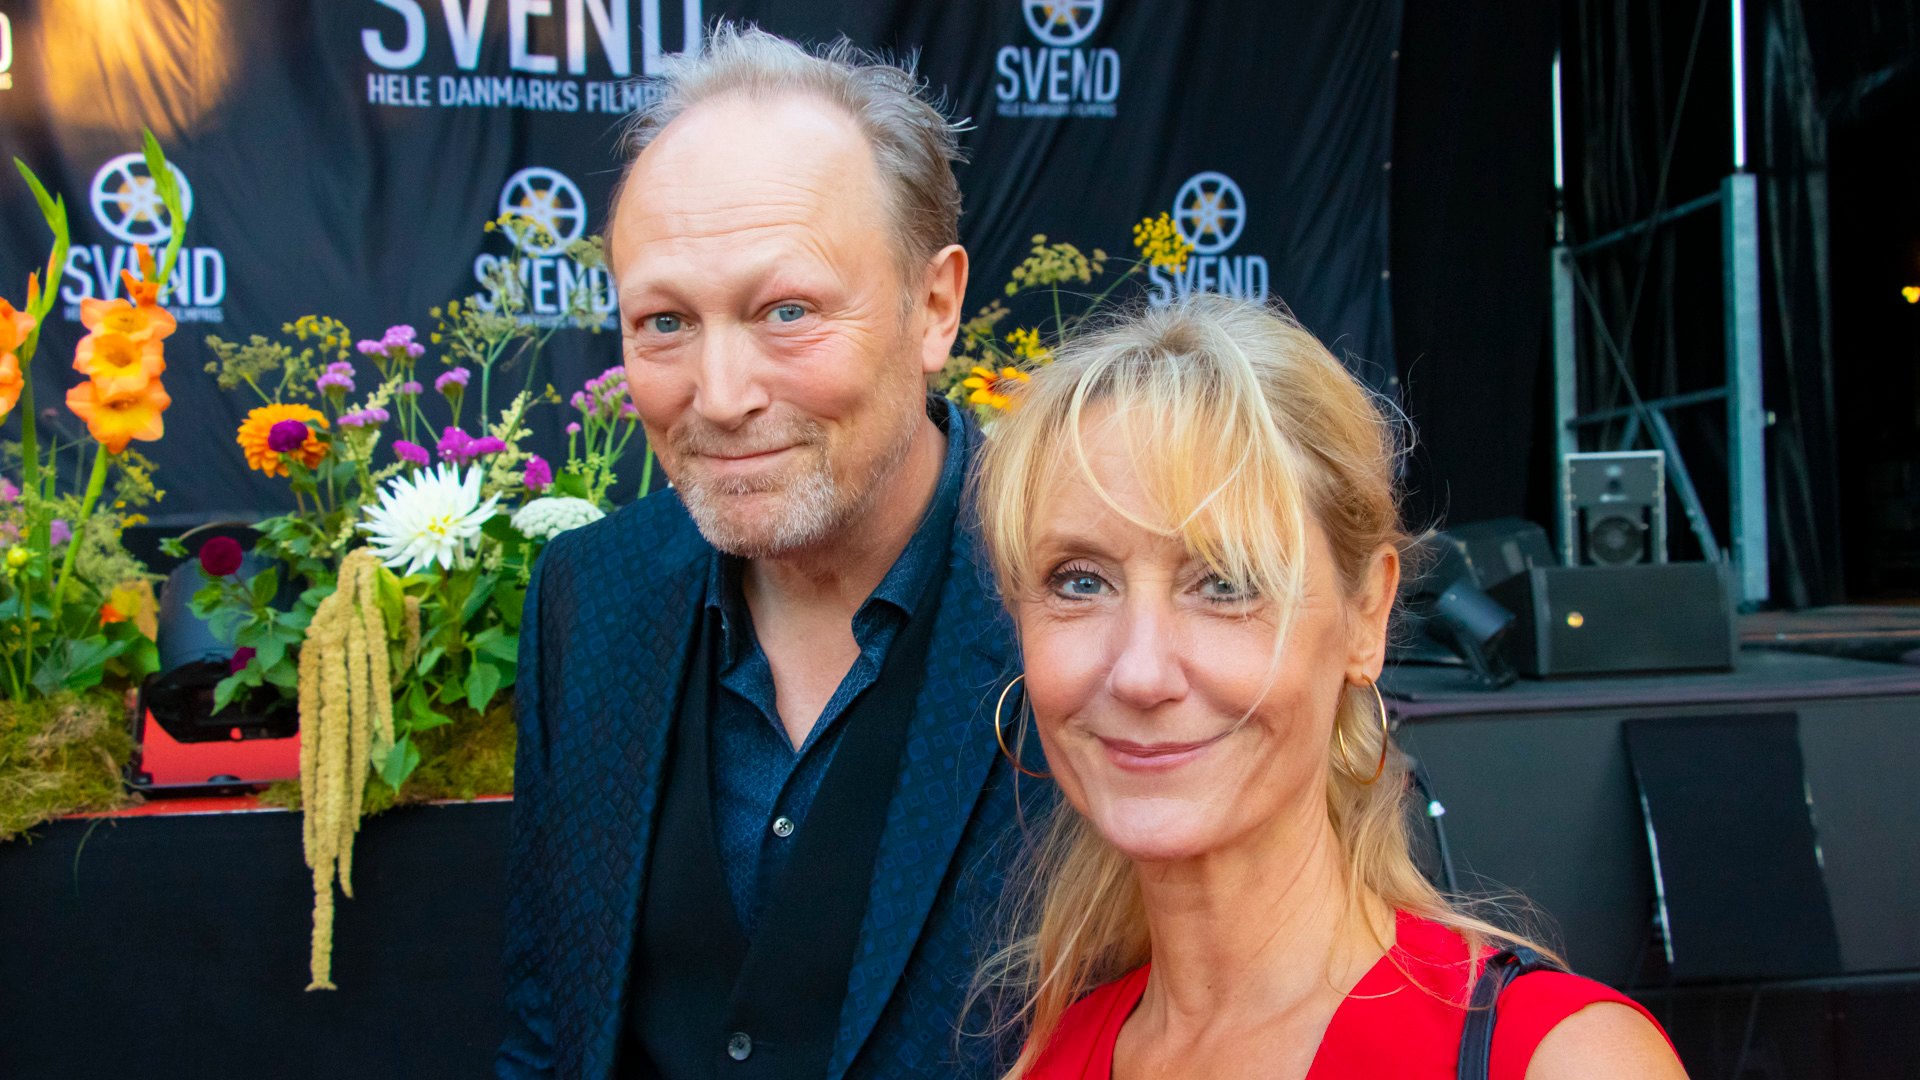 Lars Mikkelsen og Anette Støvelbæk ved Svend Filmfestival